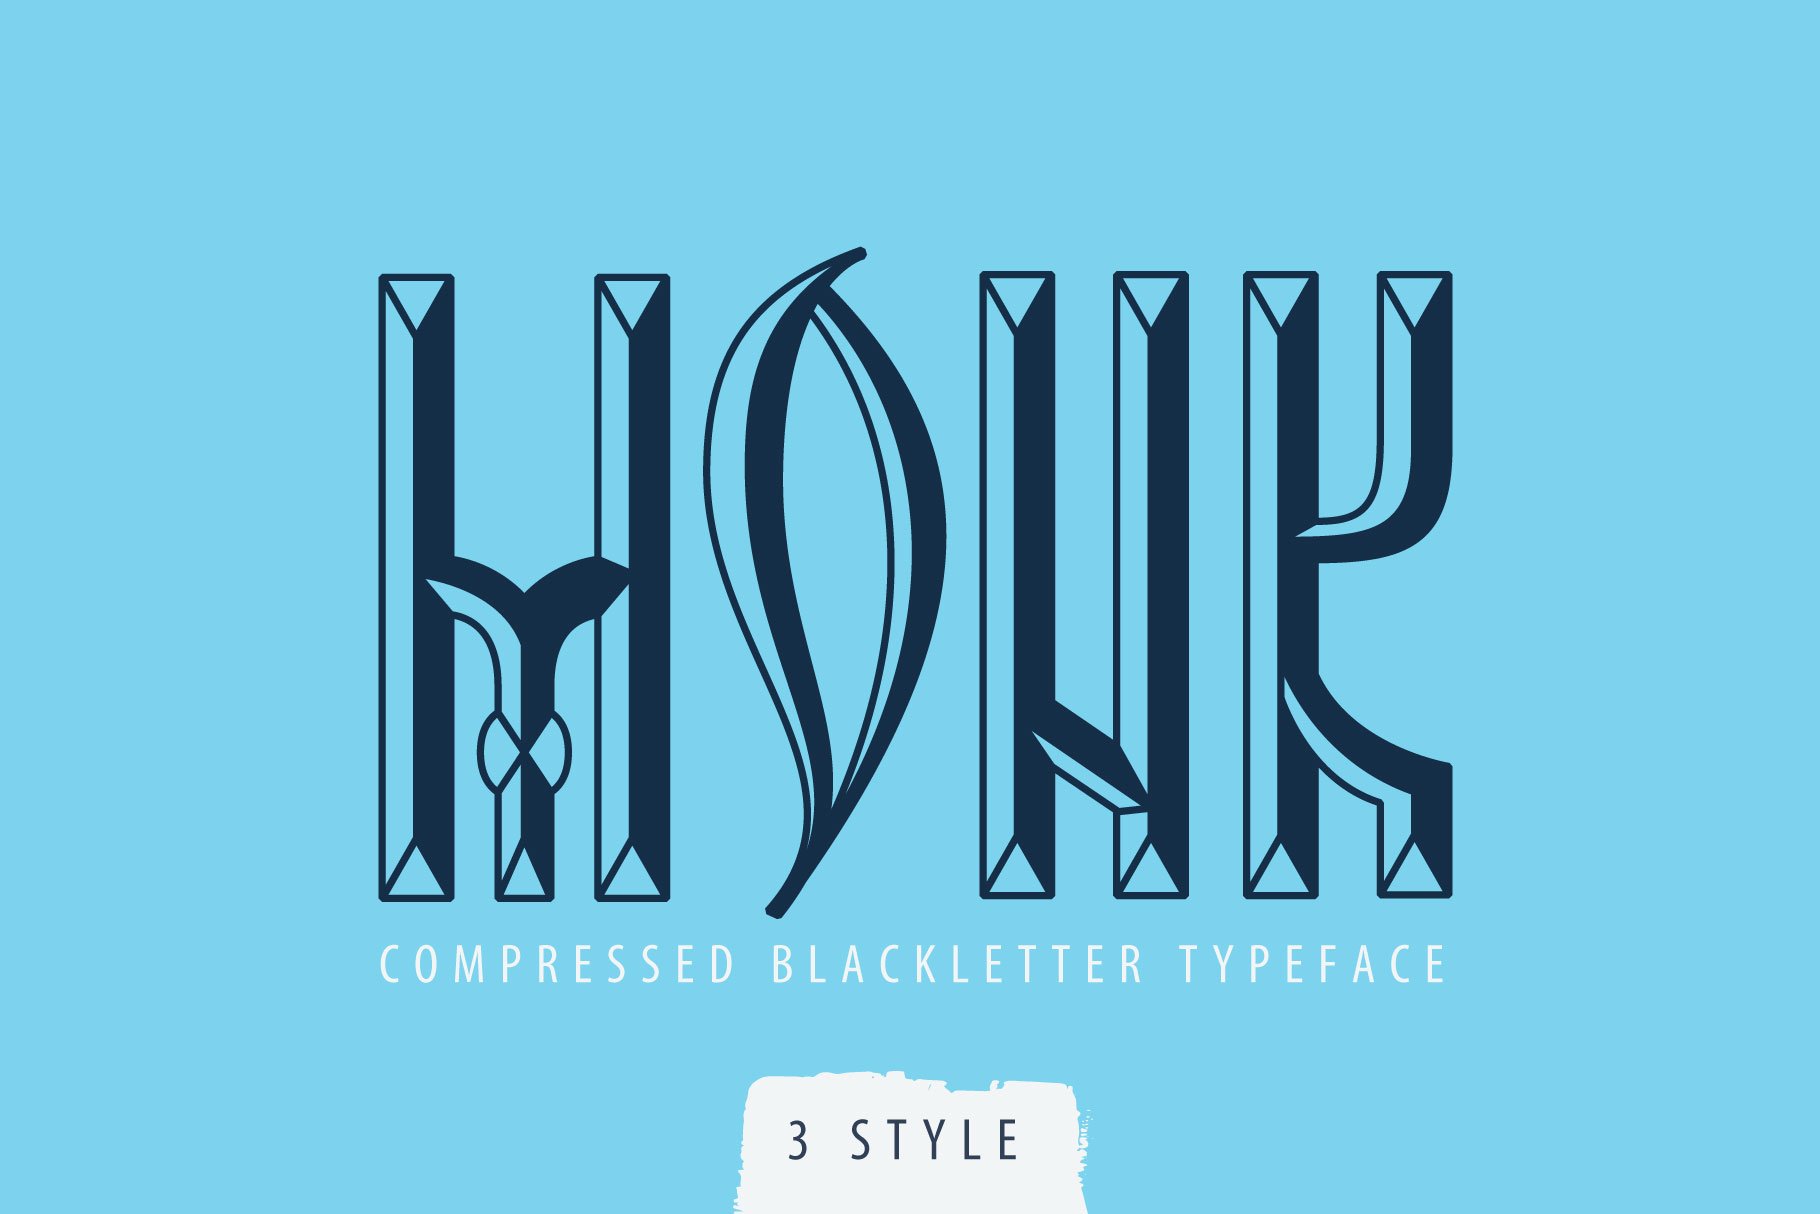 Northern Monk blackletter font cover image.